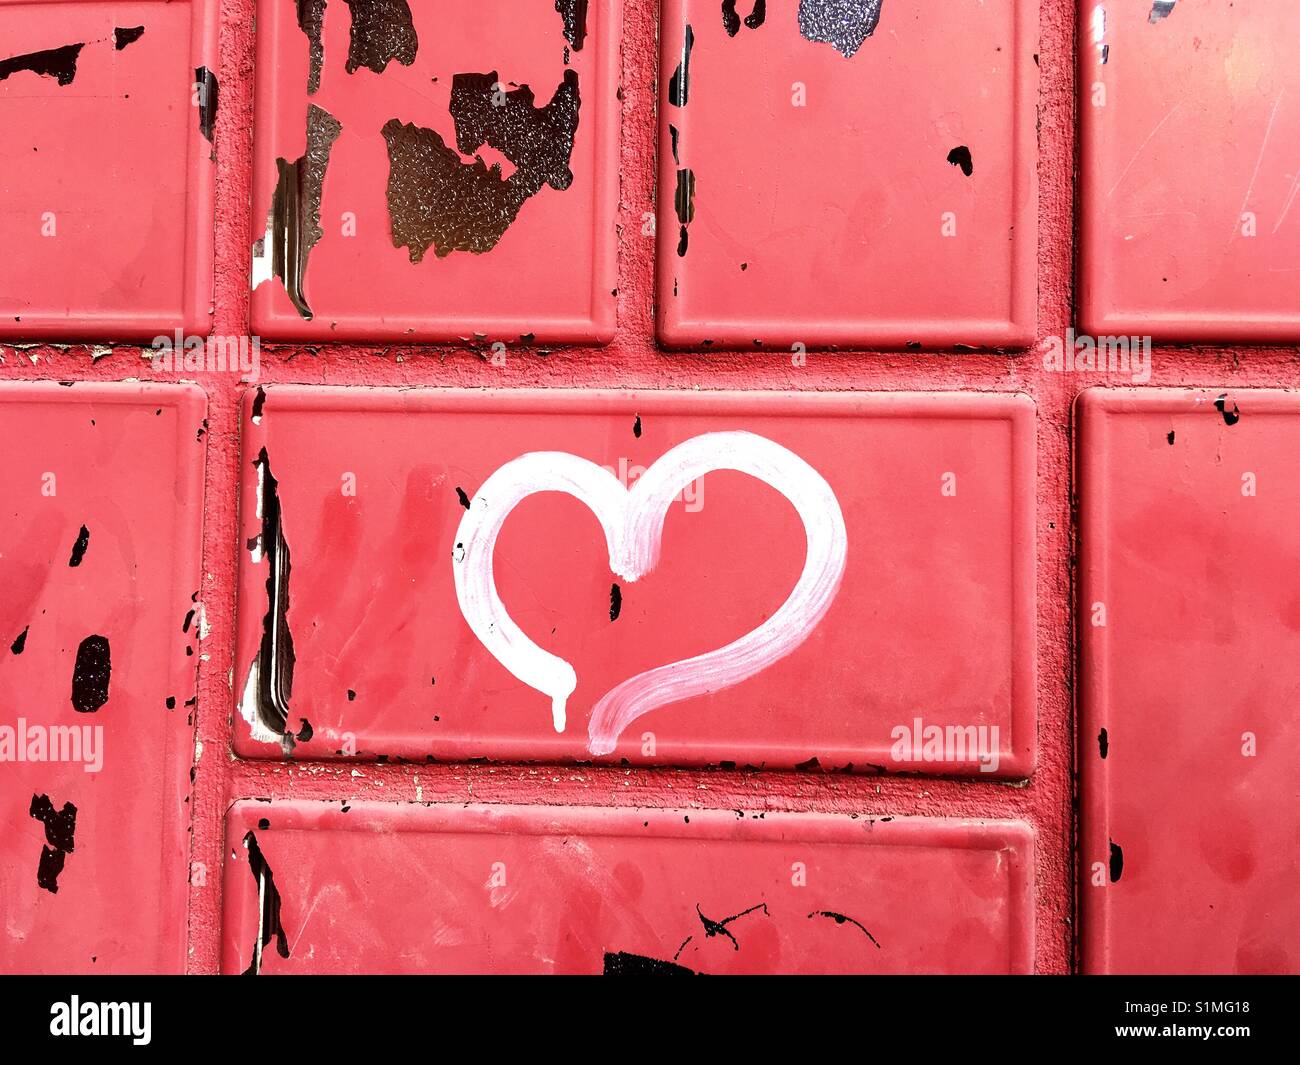 Weiß Herz Graffiti an einer roten Wand Stockfoto